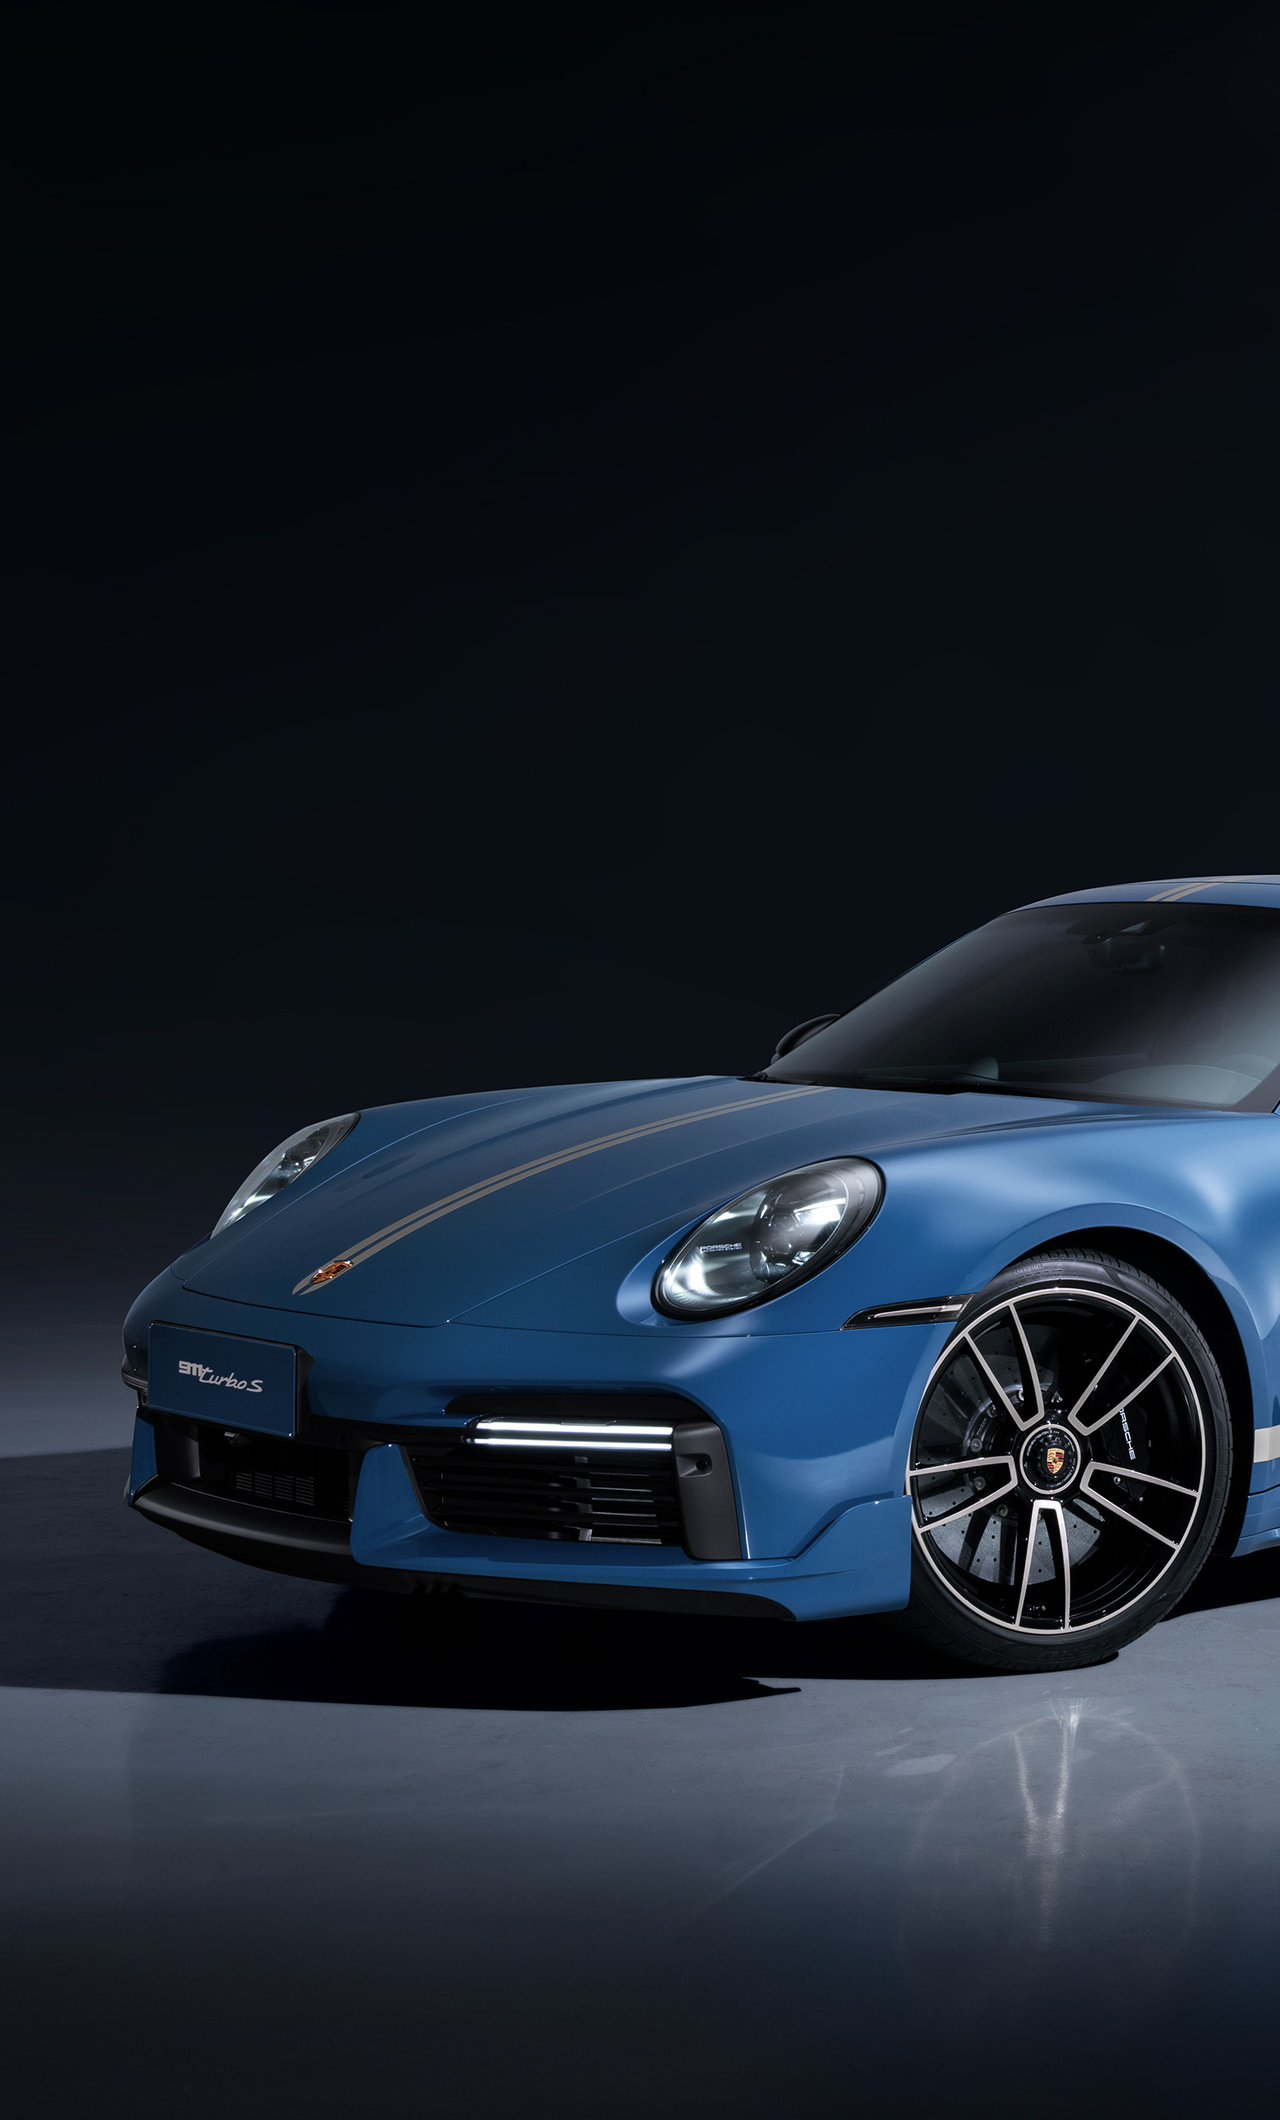 1280x2120 Porsche 911 TurboS 4k iPhone 6+ HD 4k Wallpapers, Images ...